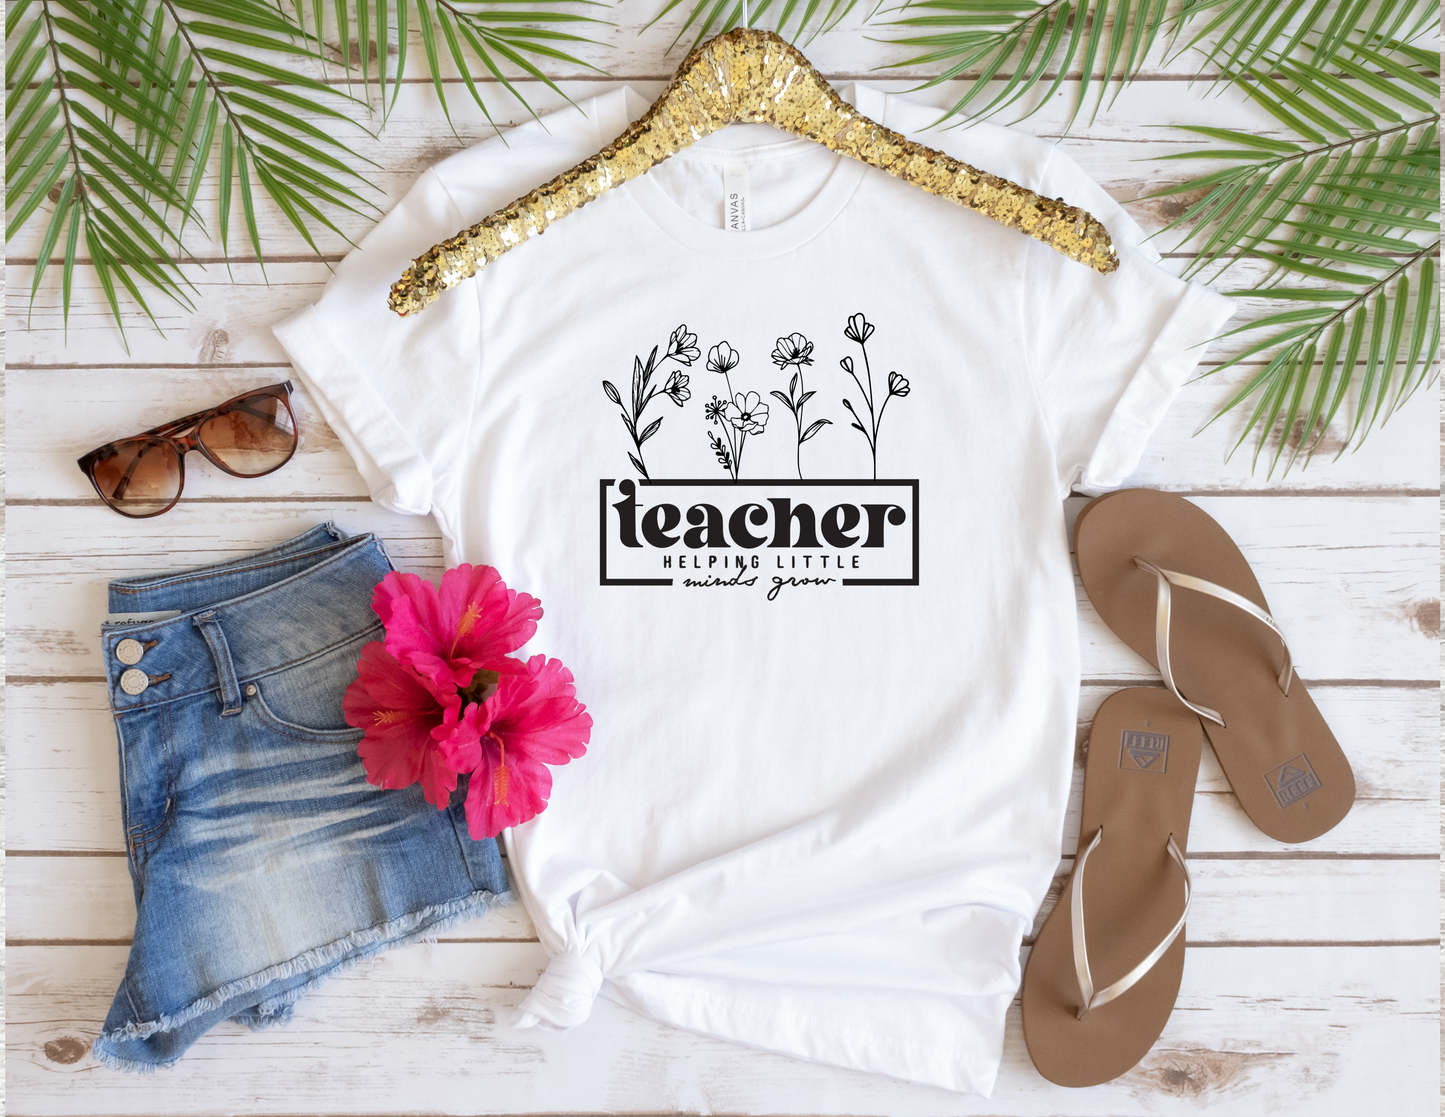 Teacher helping little minds grow